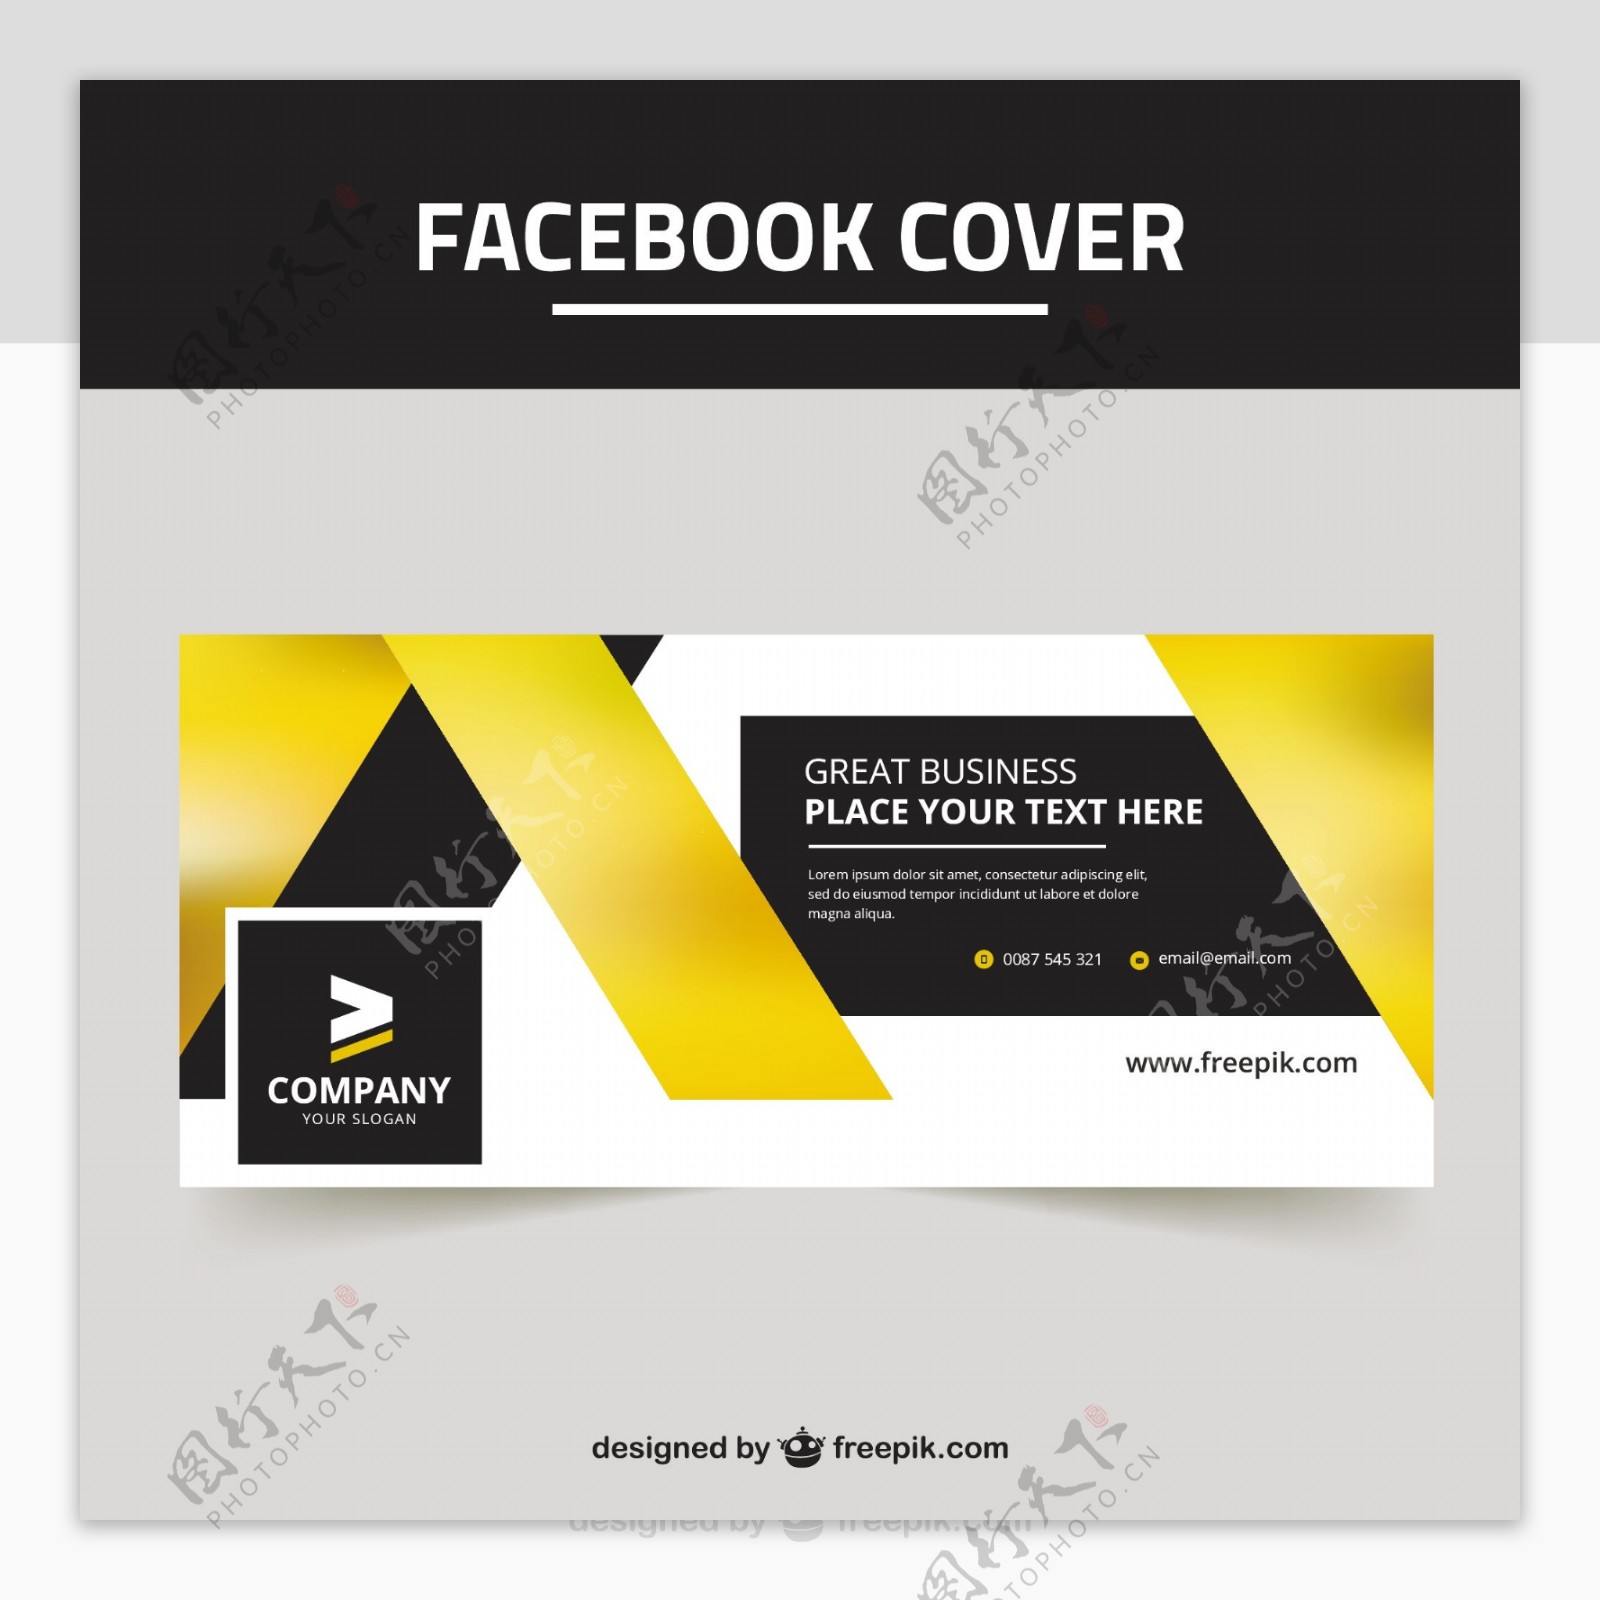 脸谱网封面与黑色和黄色的形状